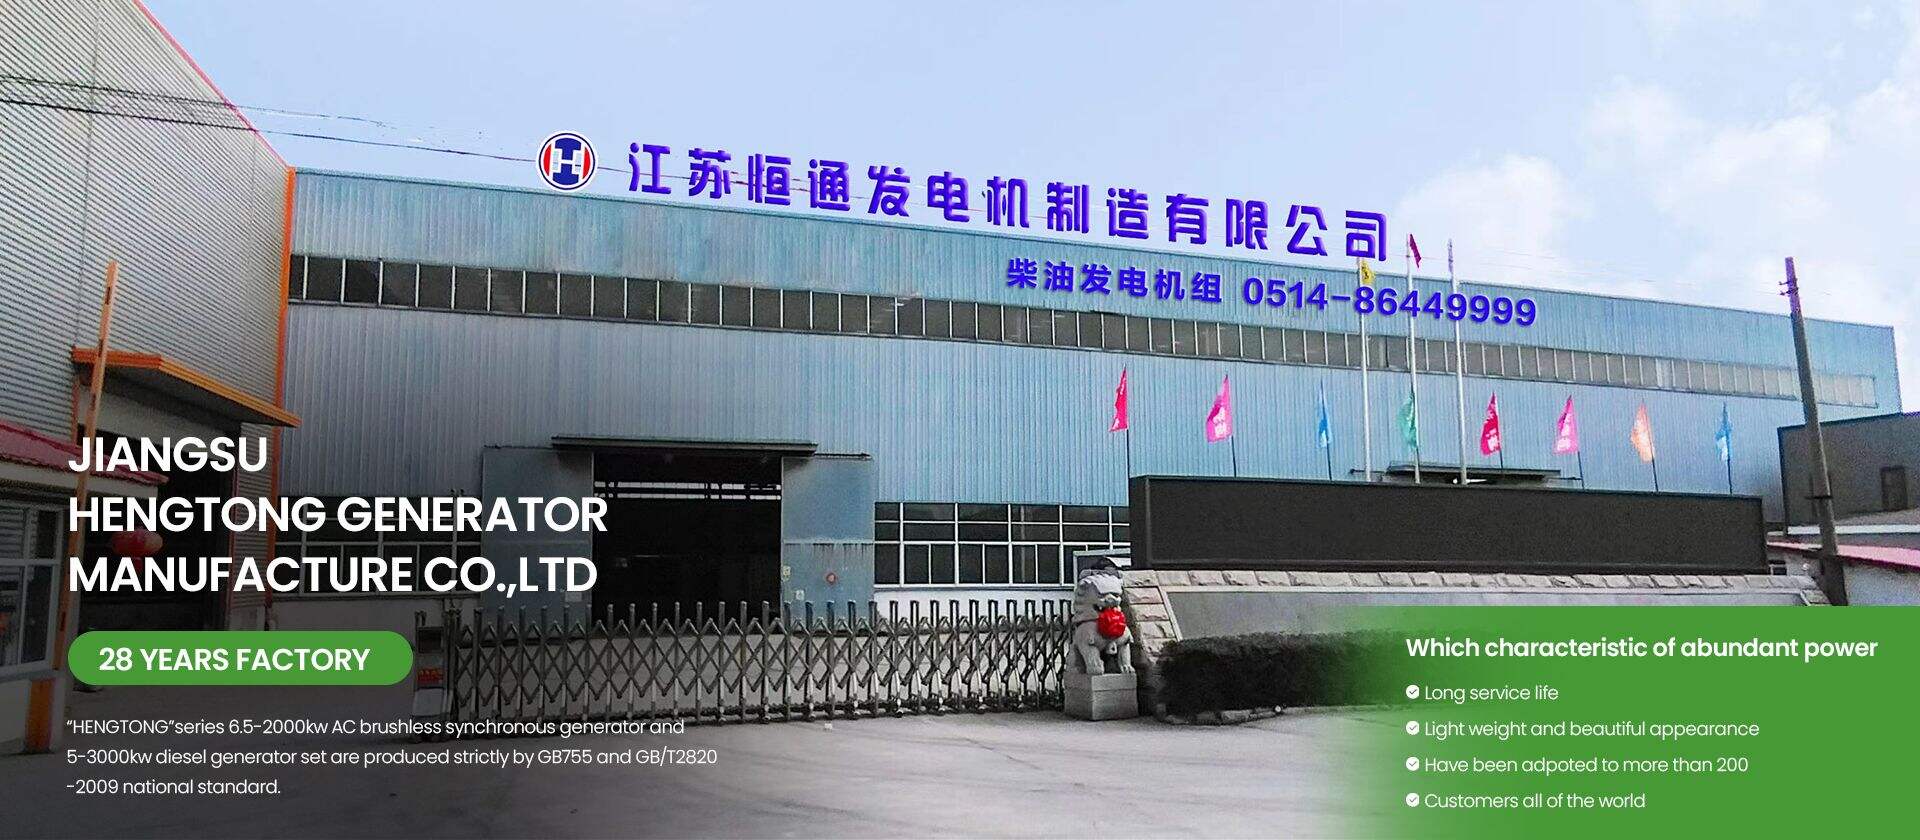 Jiangsu Hengtong Generator Manufacture Co., Ltd.